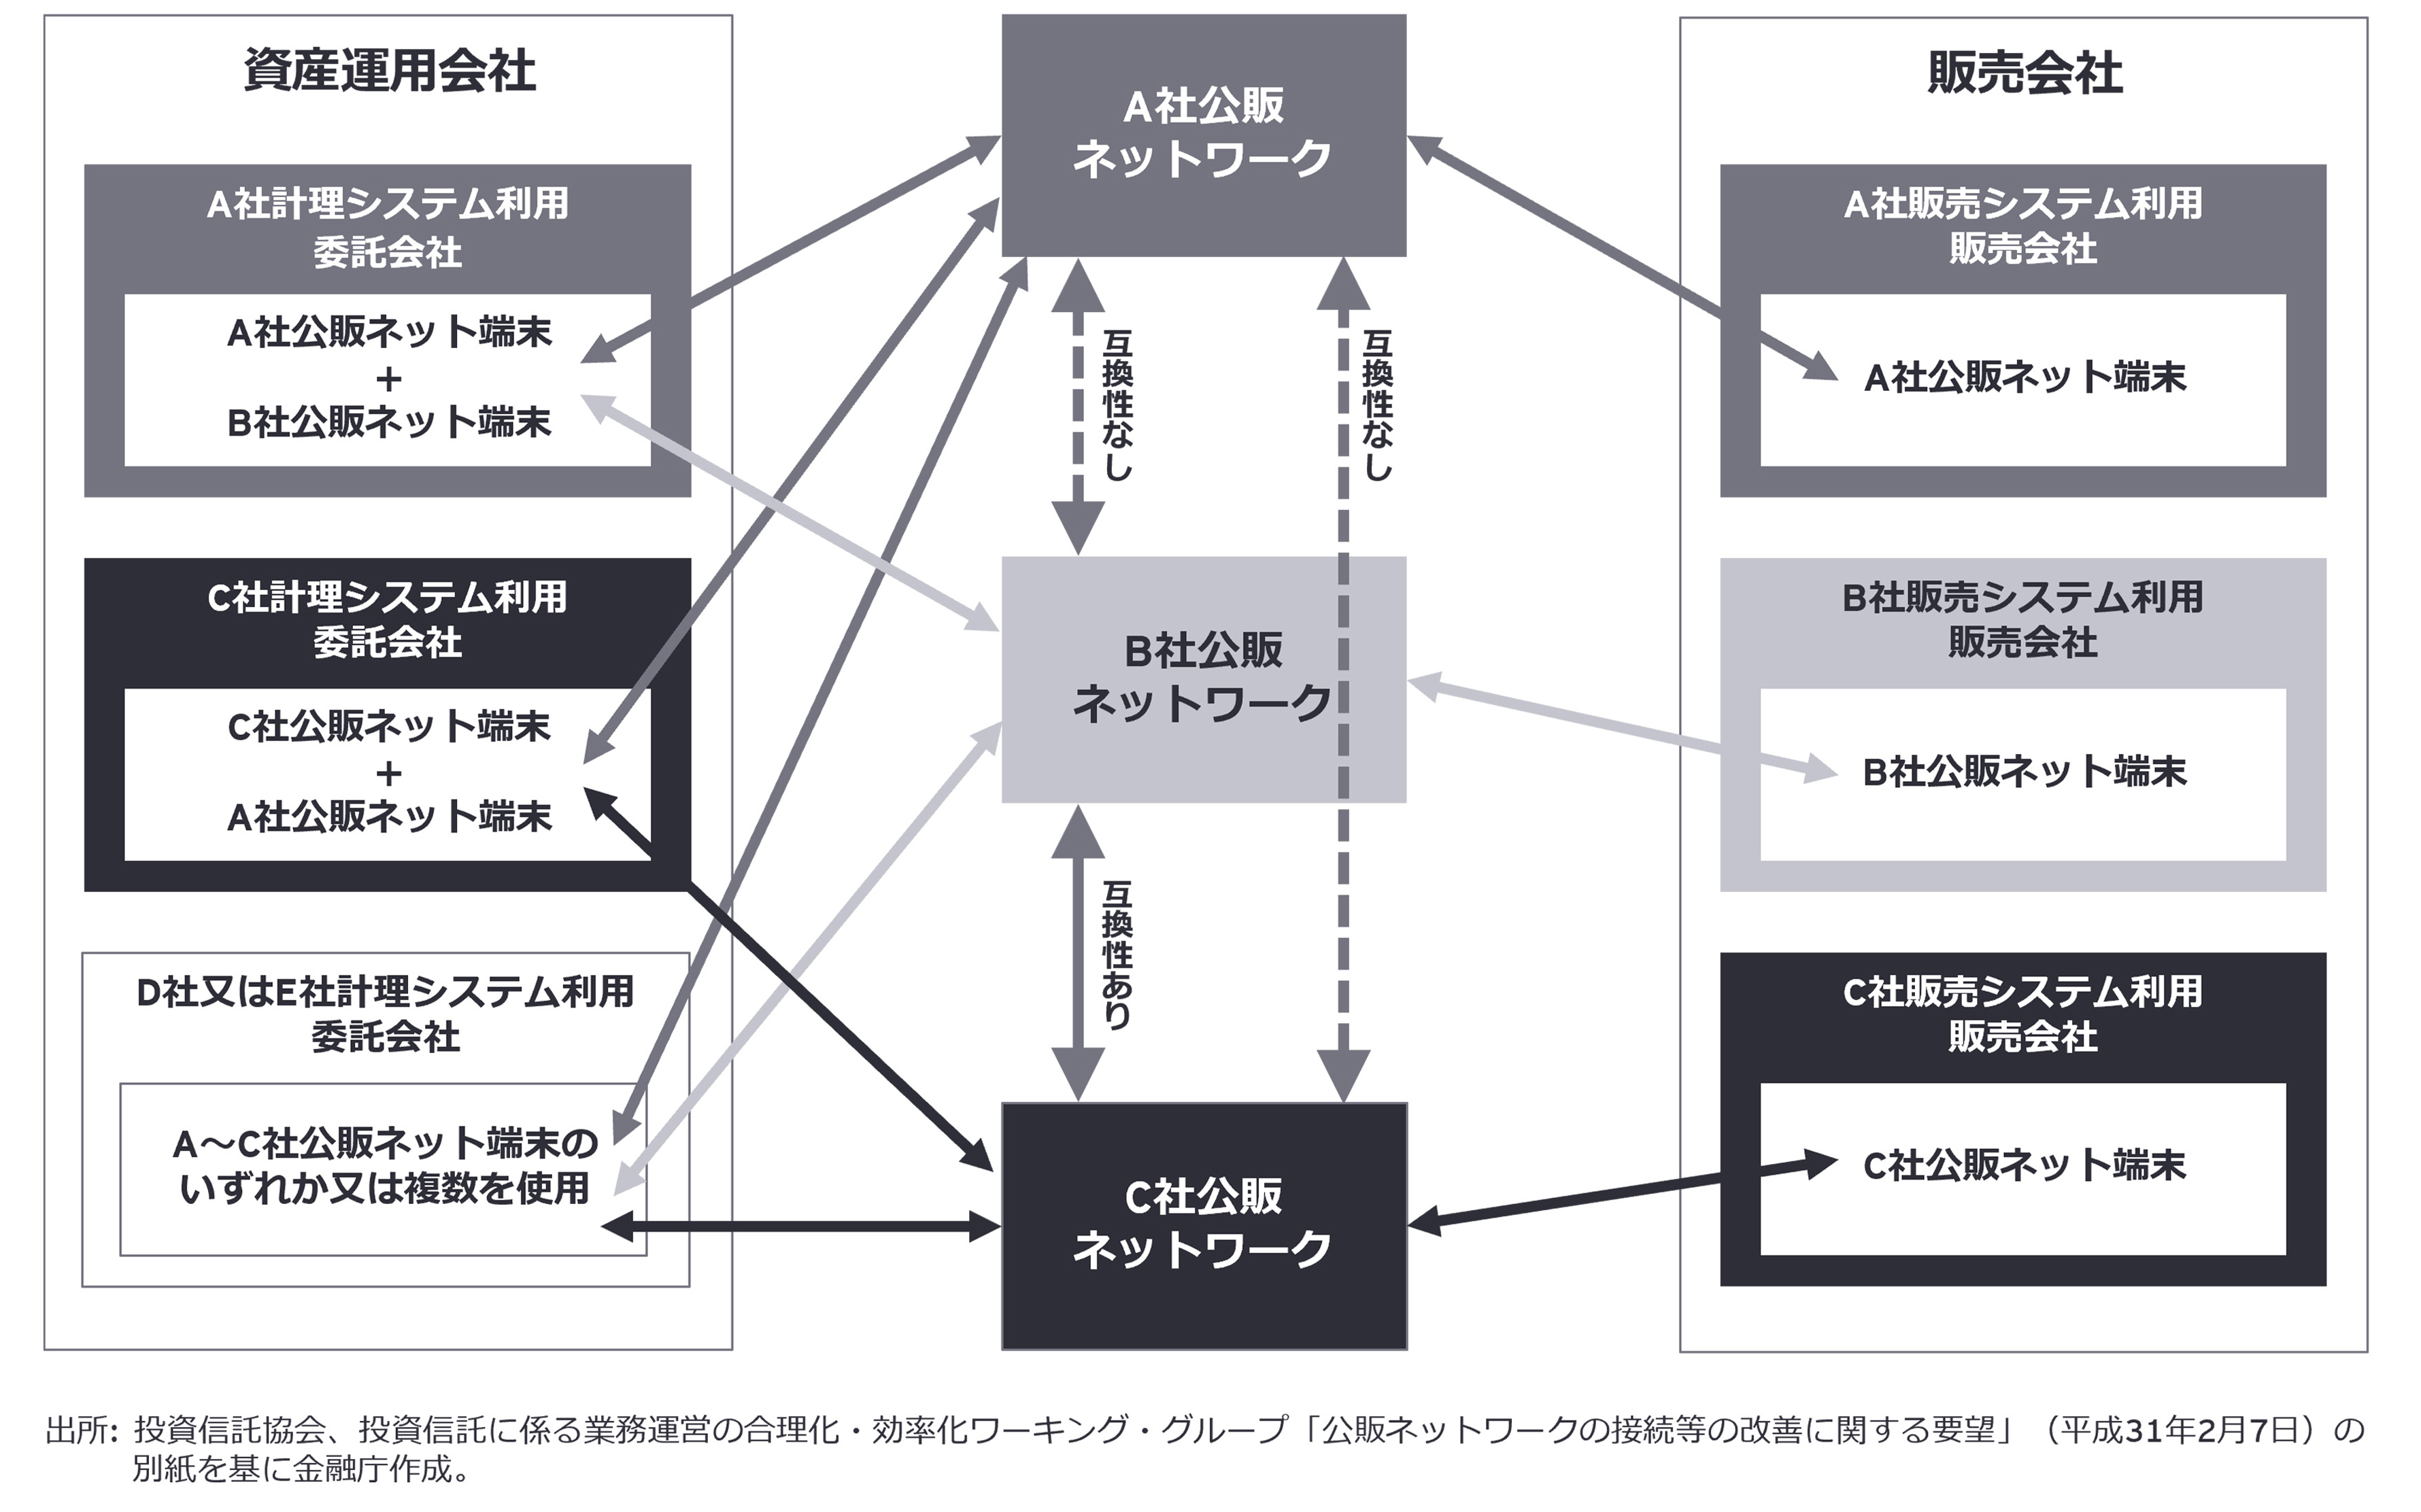 【図8】公販ネットワークの接続状況と課題